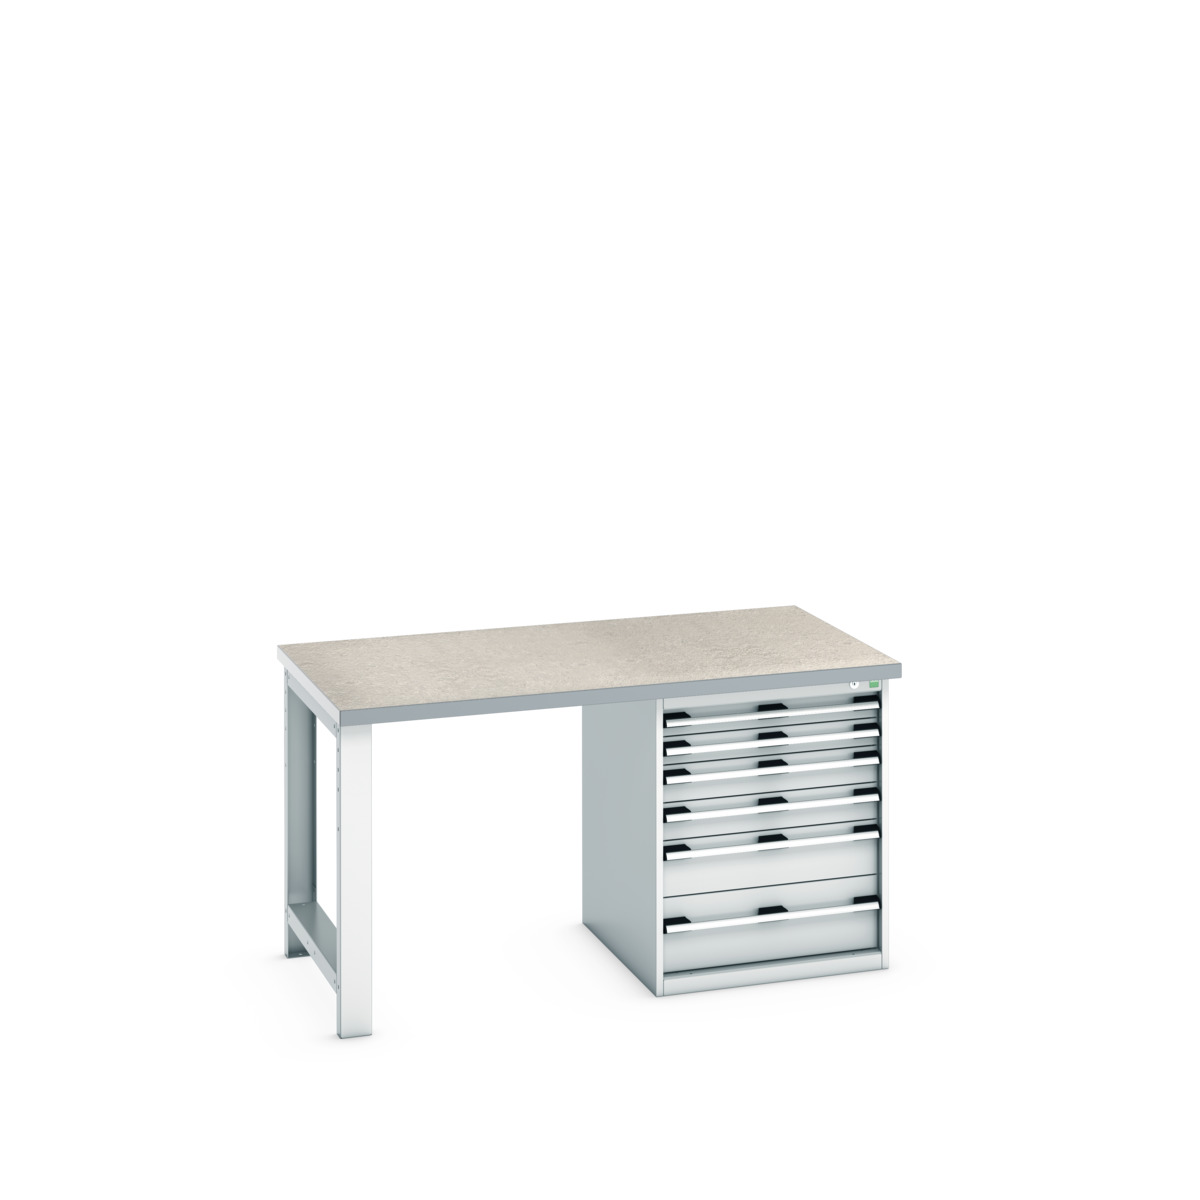 41004114.16V - cubio pedestal bench (lino)